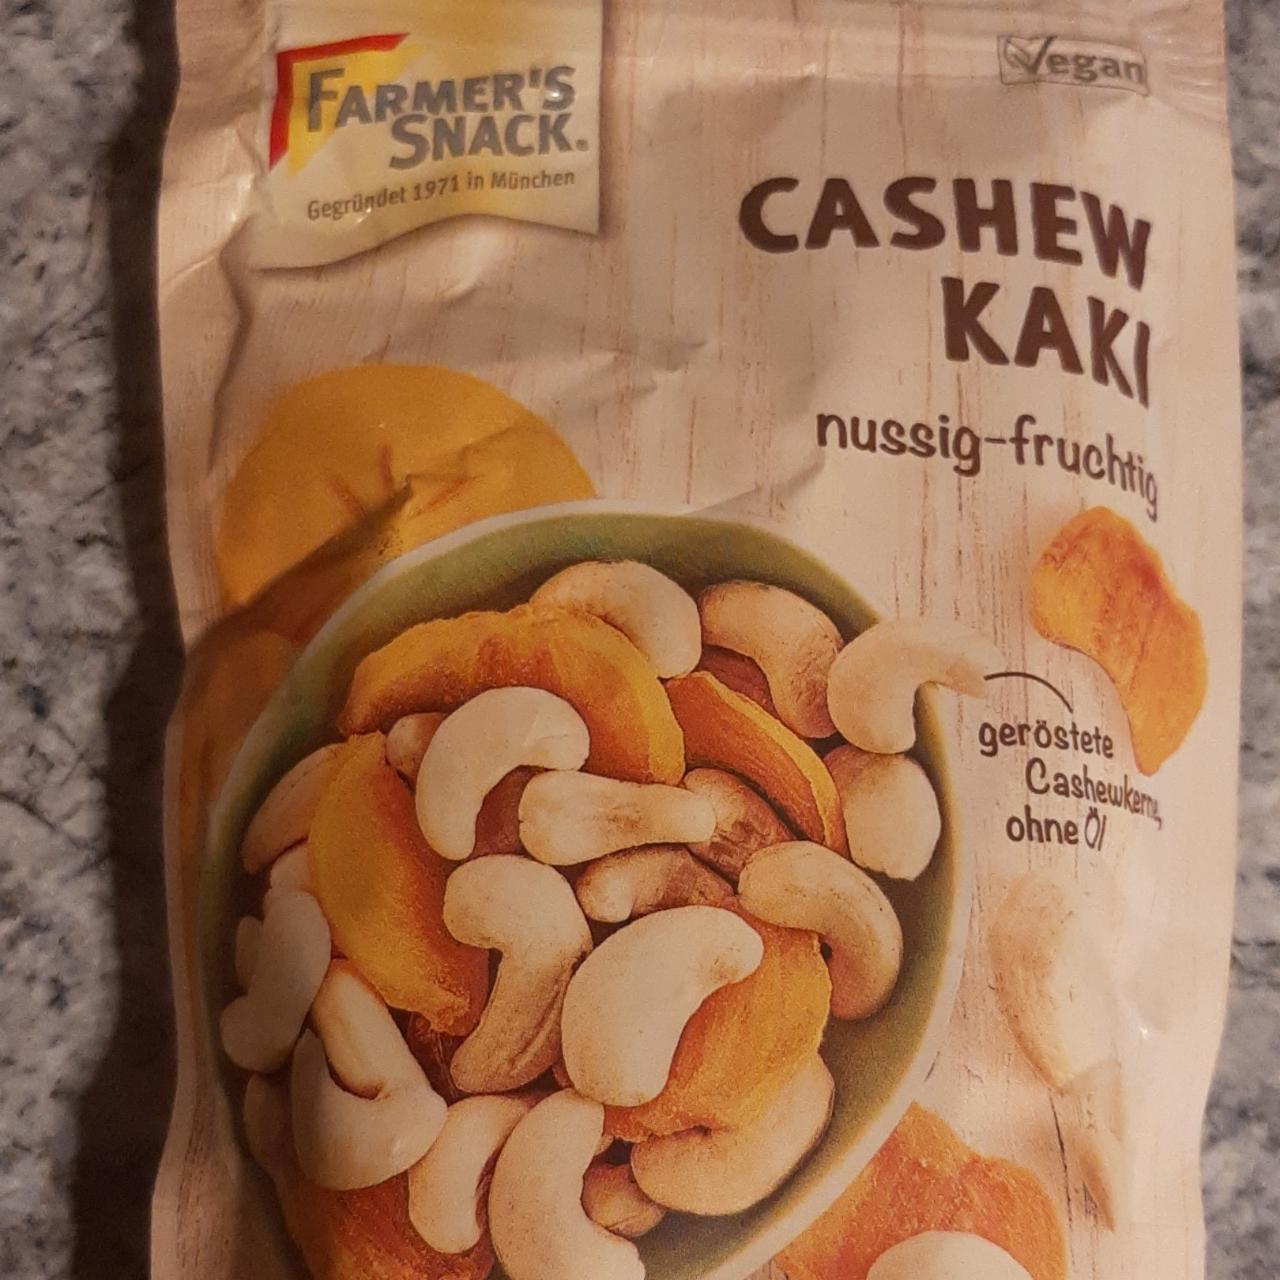 Fotografie - Cashew kaki Farmer's snack